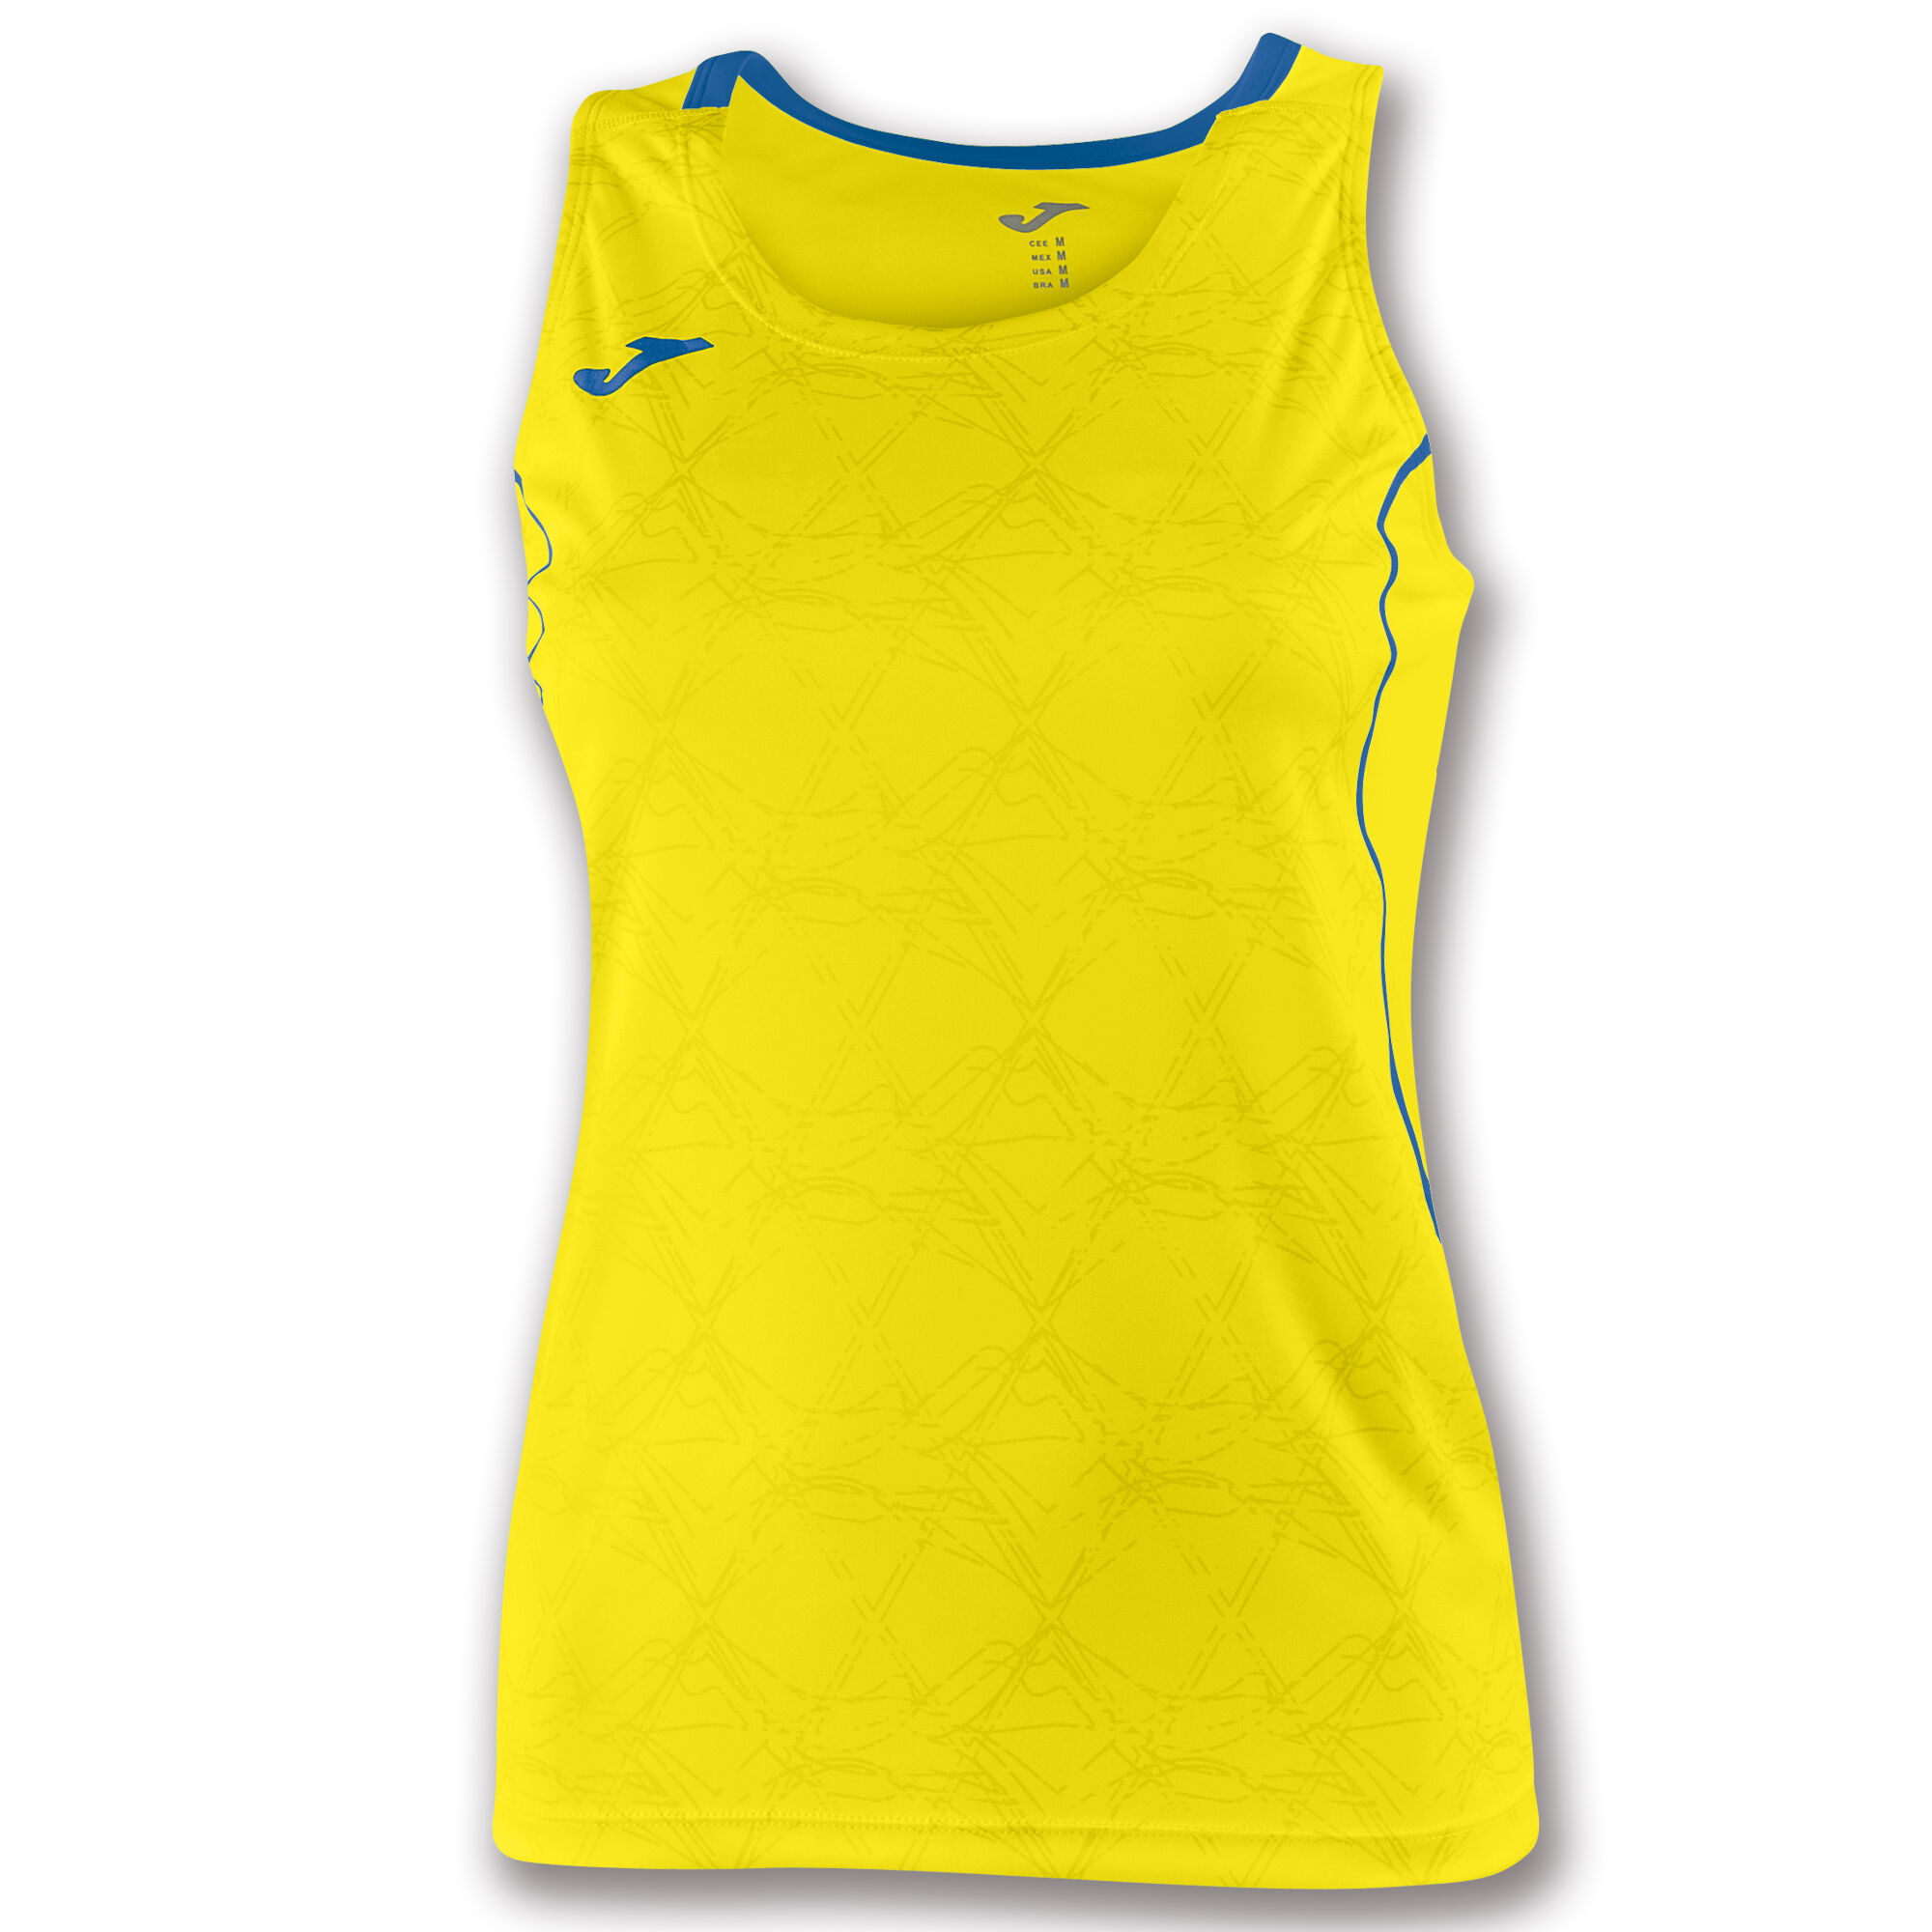 Camiseta sin mangas mujer Olimpia amarillo